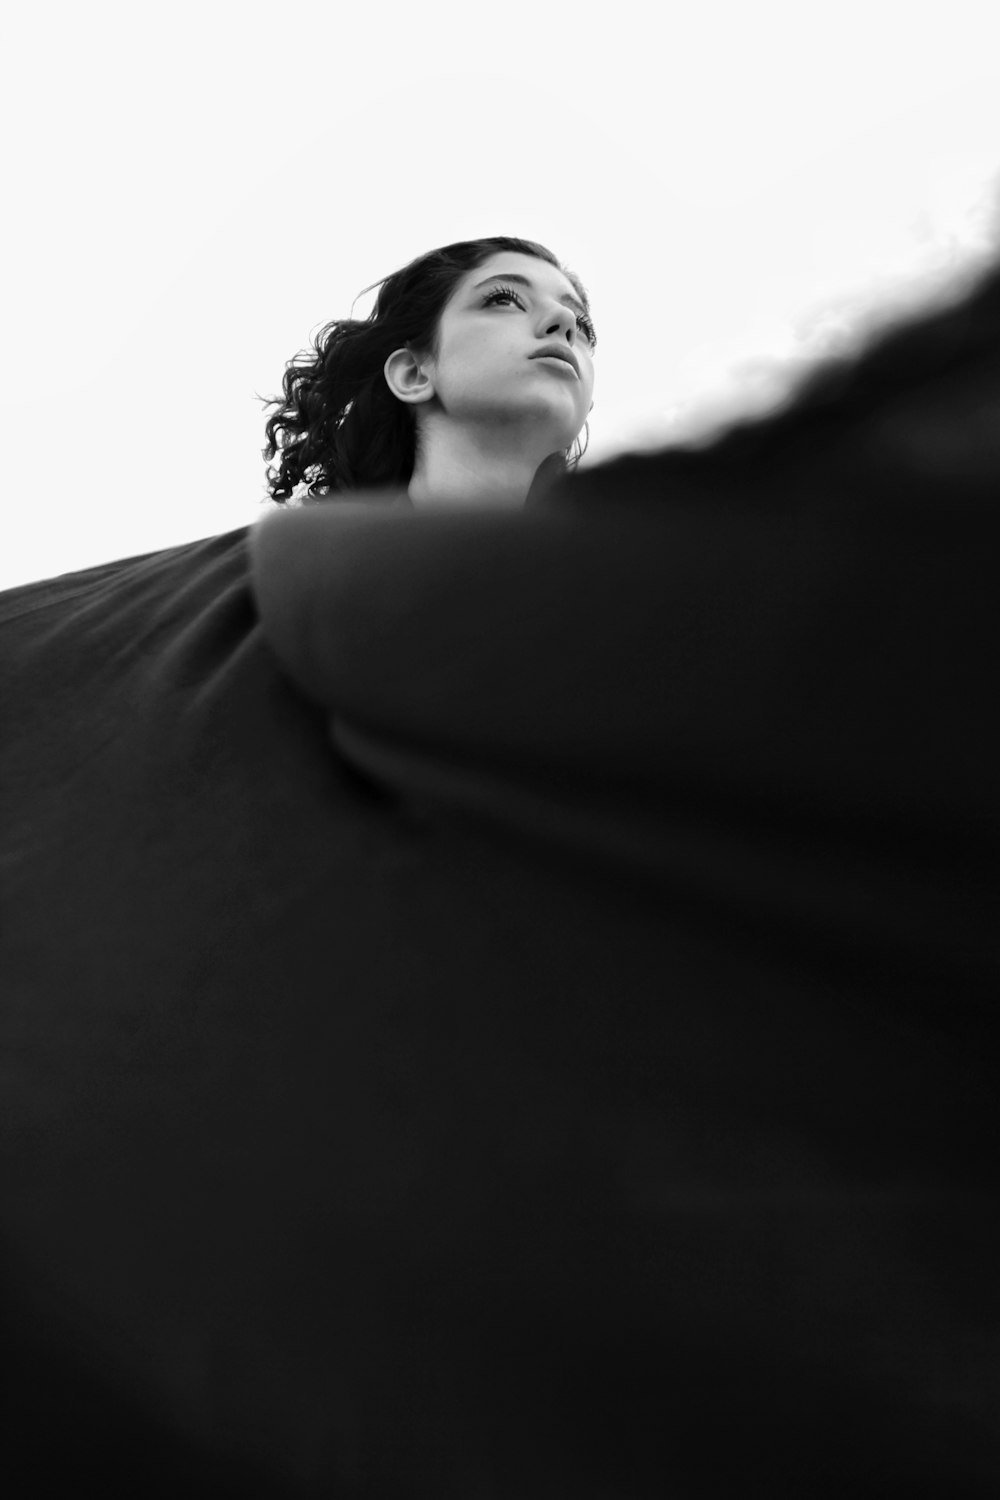 Una foto en blanco y negro de una mujer mirando hacia arriba